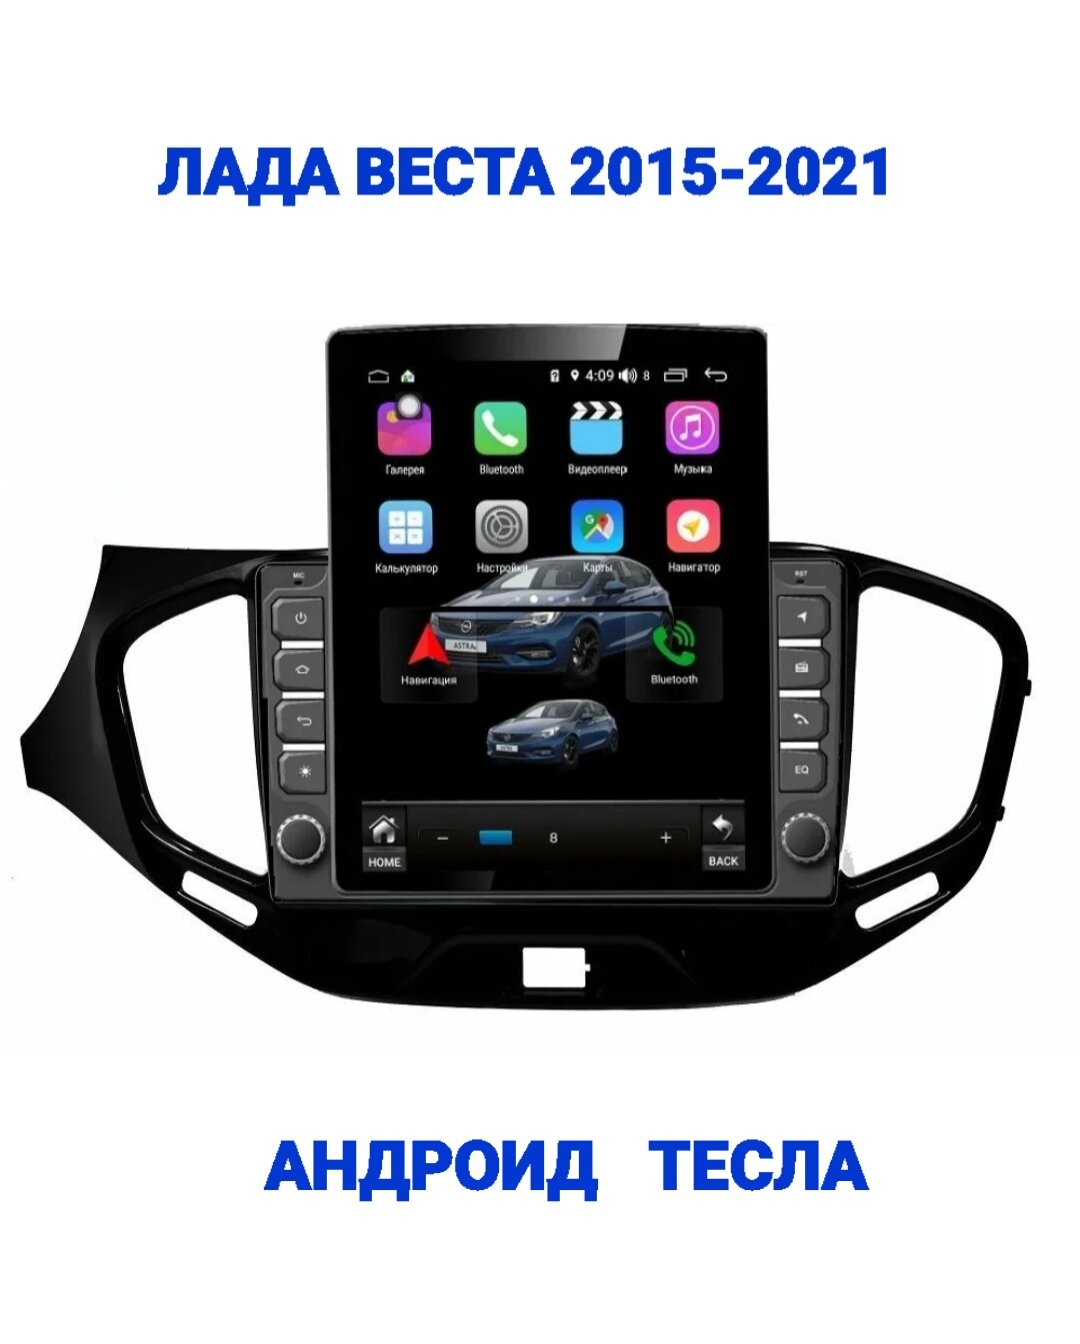 Магнитола андроид 14 память 4/64гб экран 10"дюймов. В стиле Тесла (Tesla) для Лада Веста (Lada Vesta) 2015-2021г